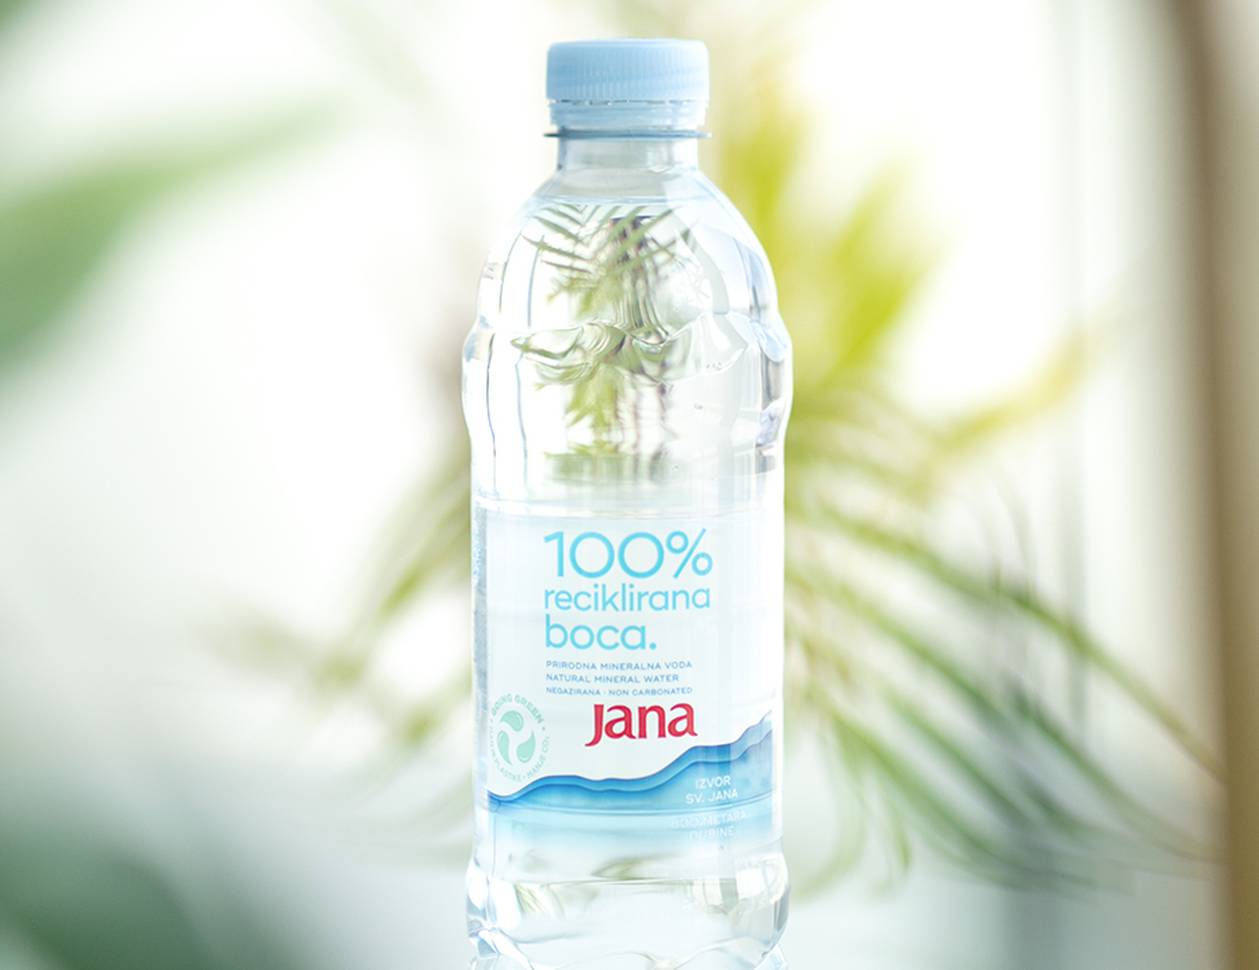 Iz poštovanja prema prirodi: Jana u 100% recikliranoj boci